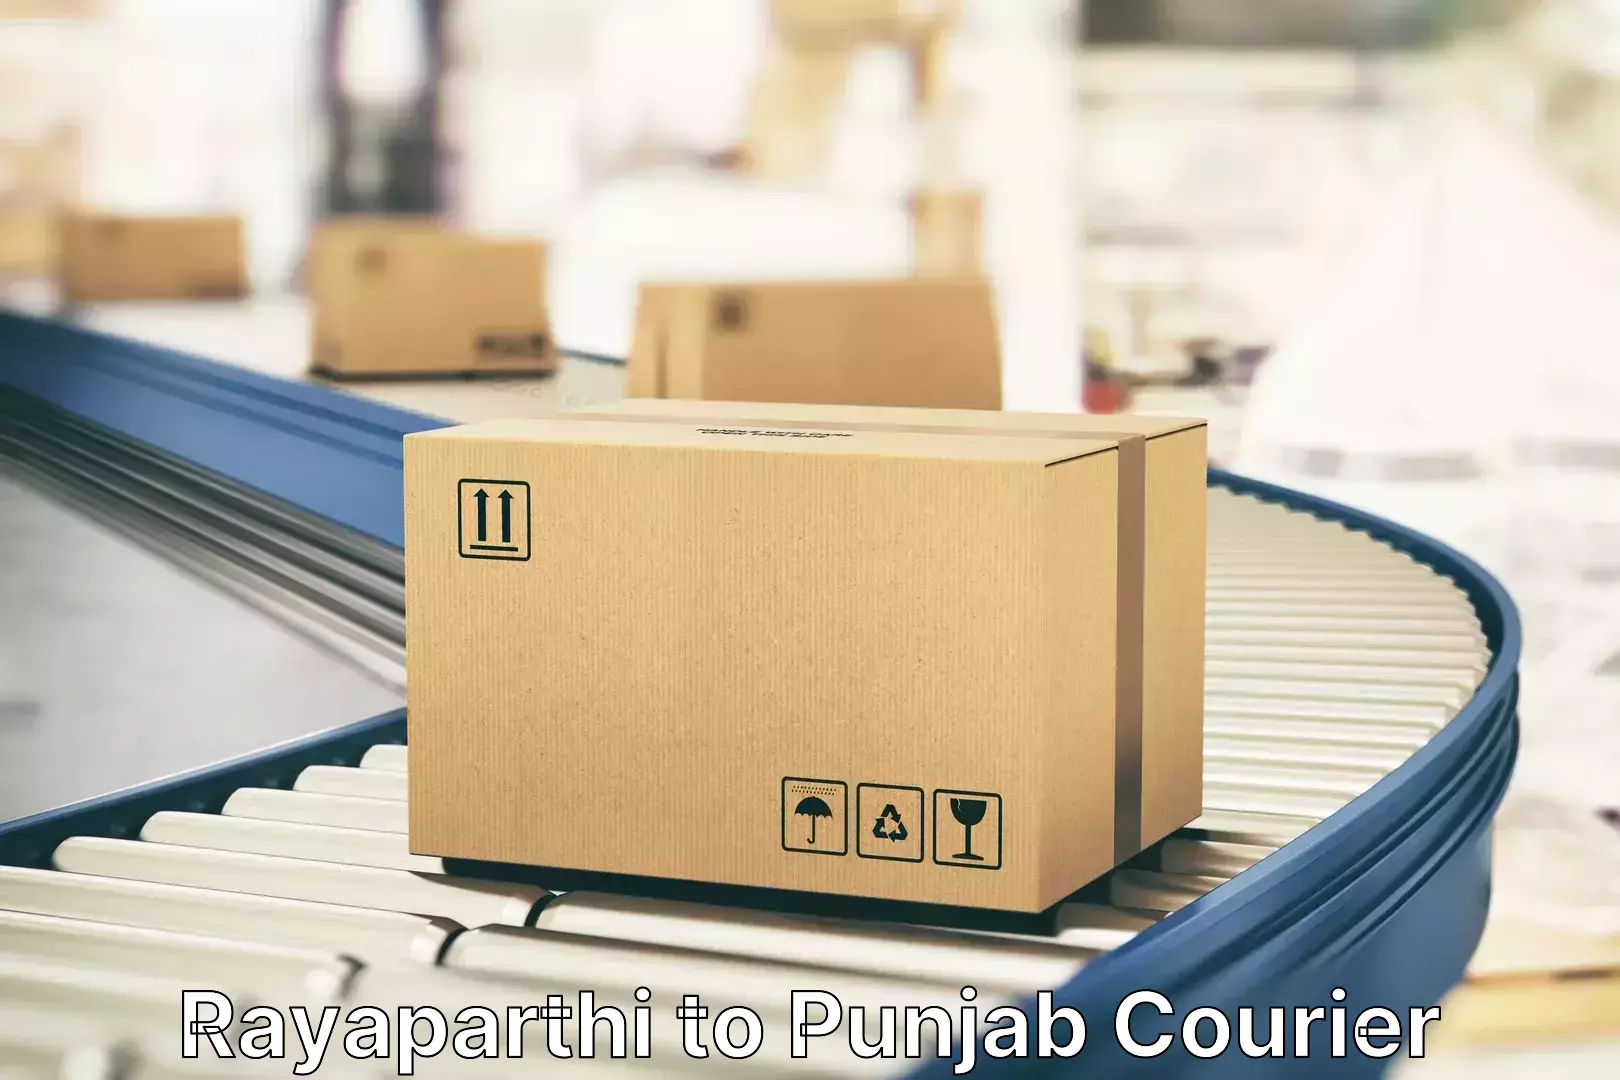 Luggage shipment specialists Rayaparthi to Punjab